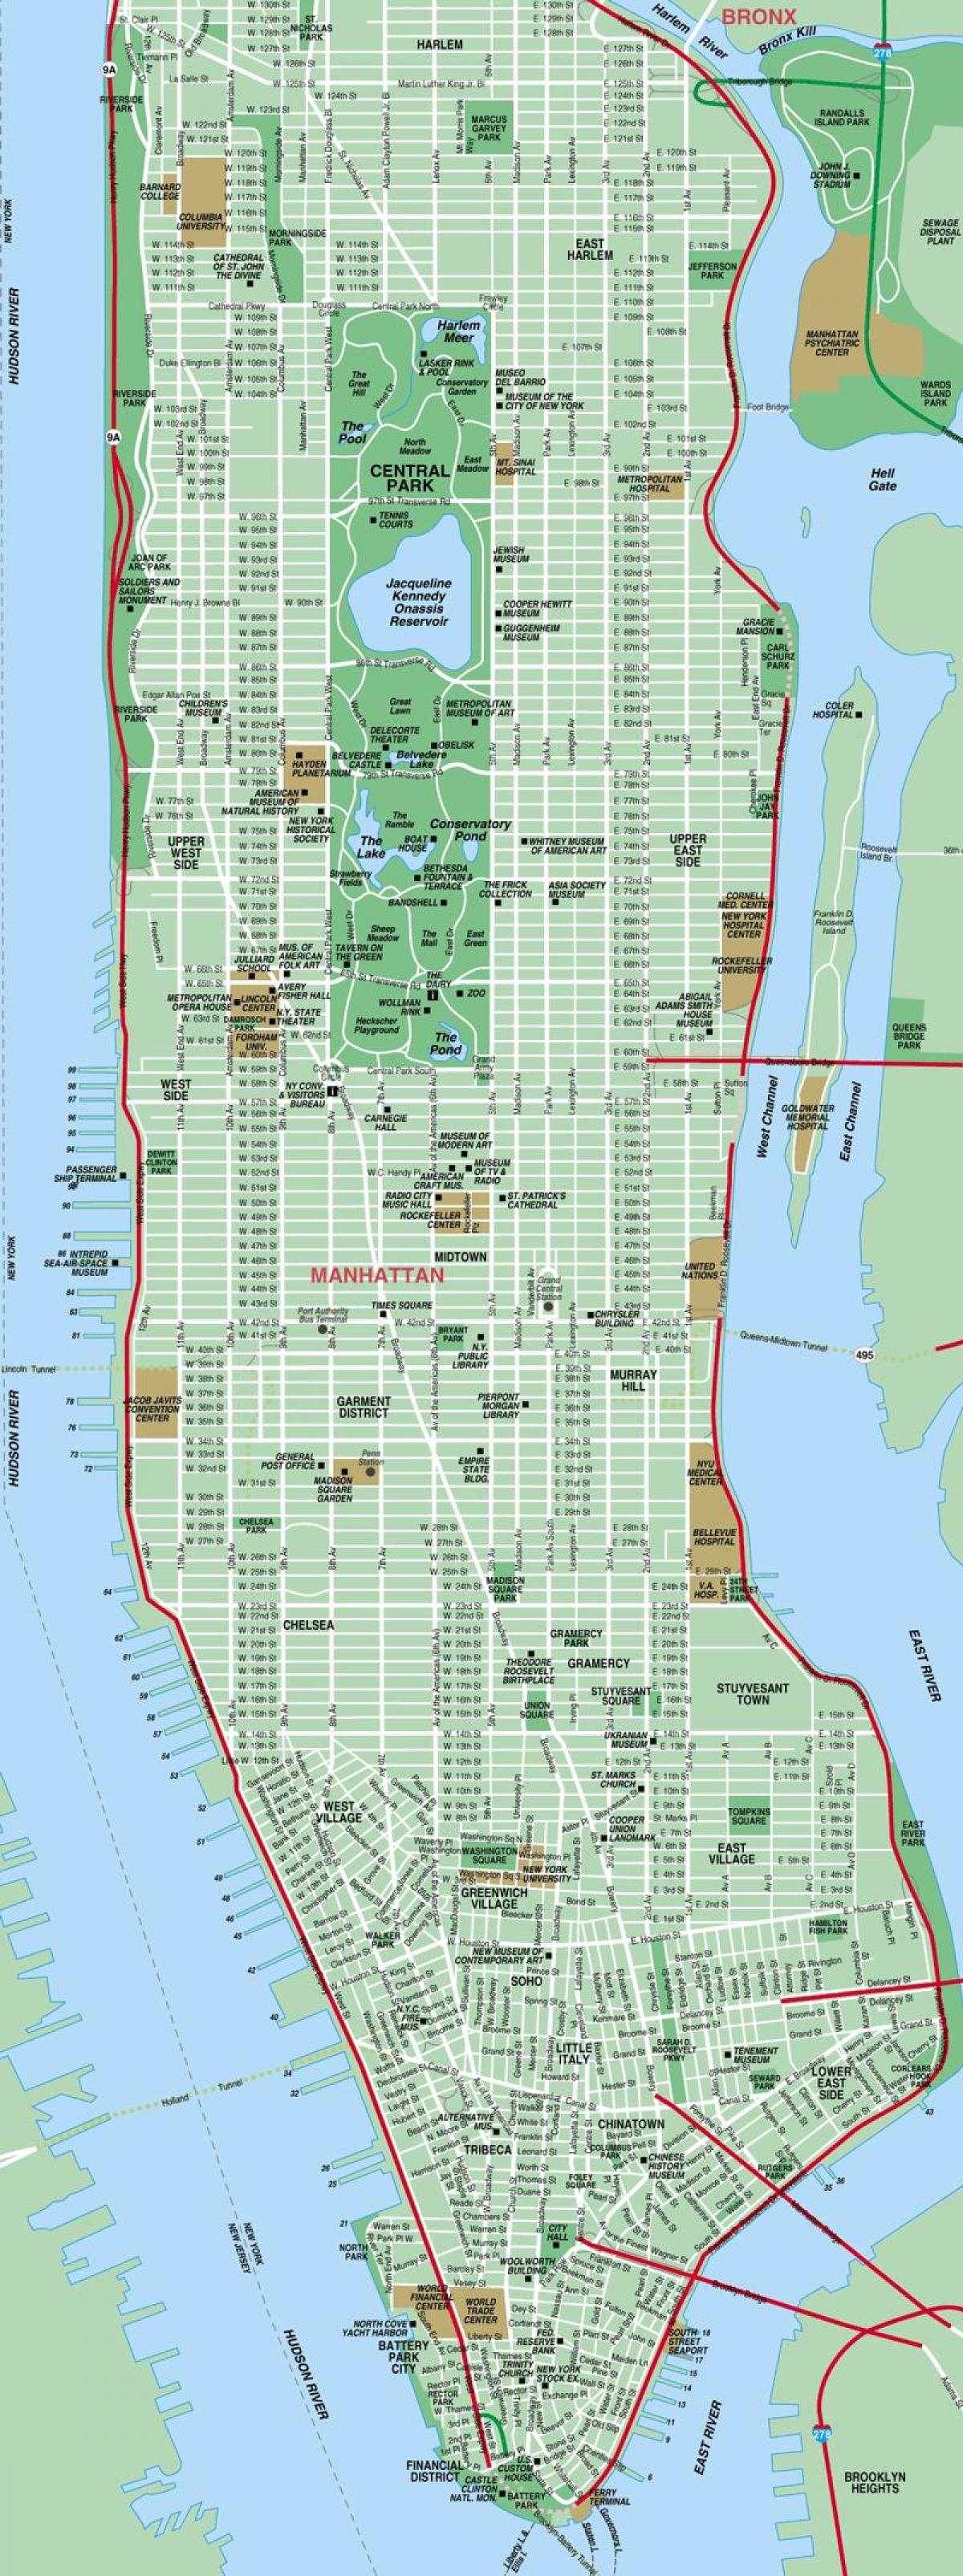 Manhattan street kaart high detail